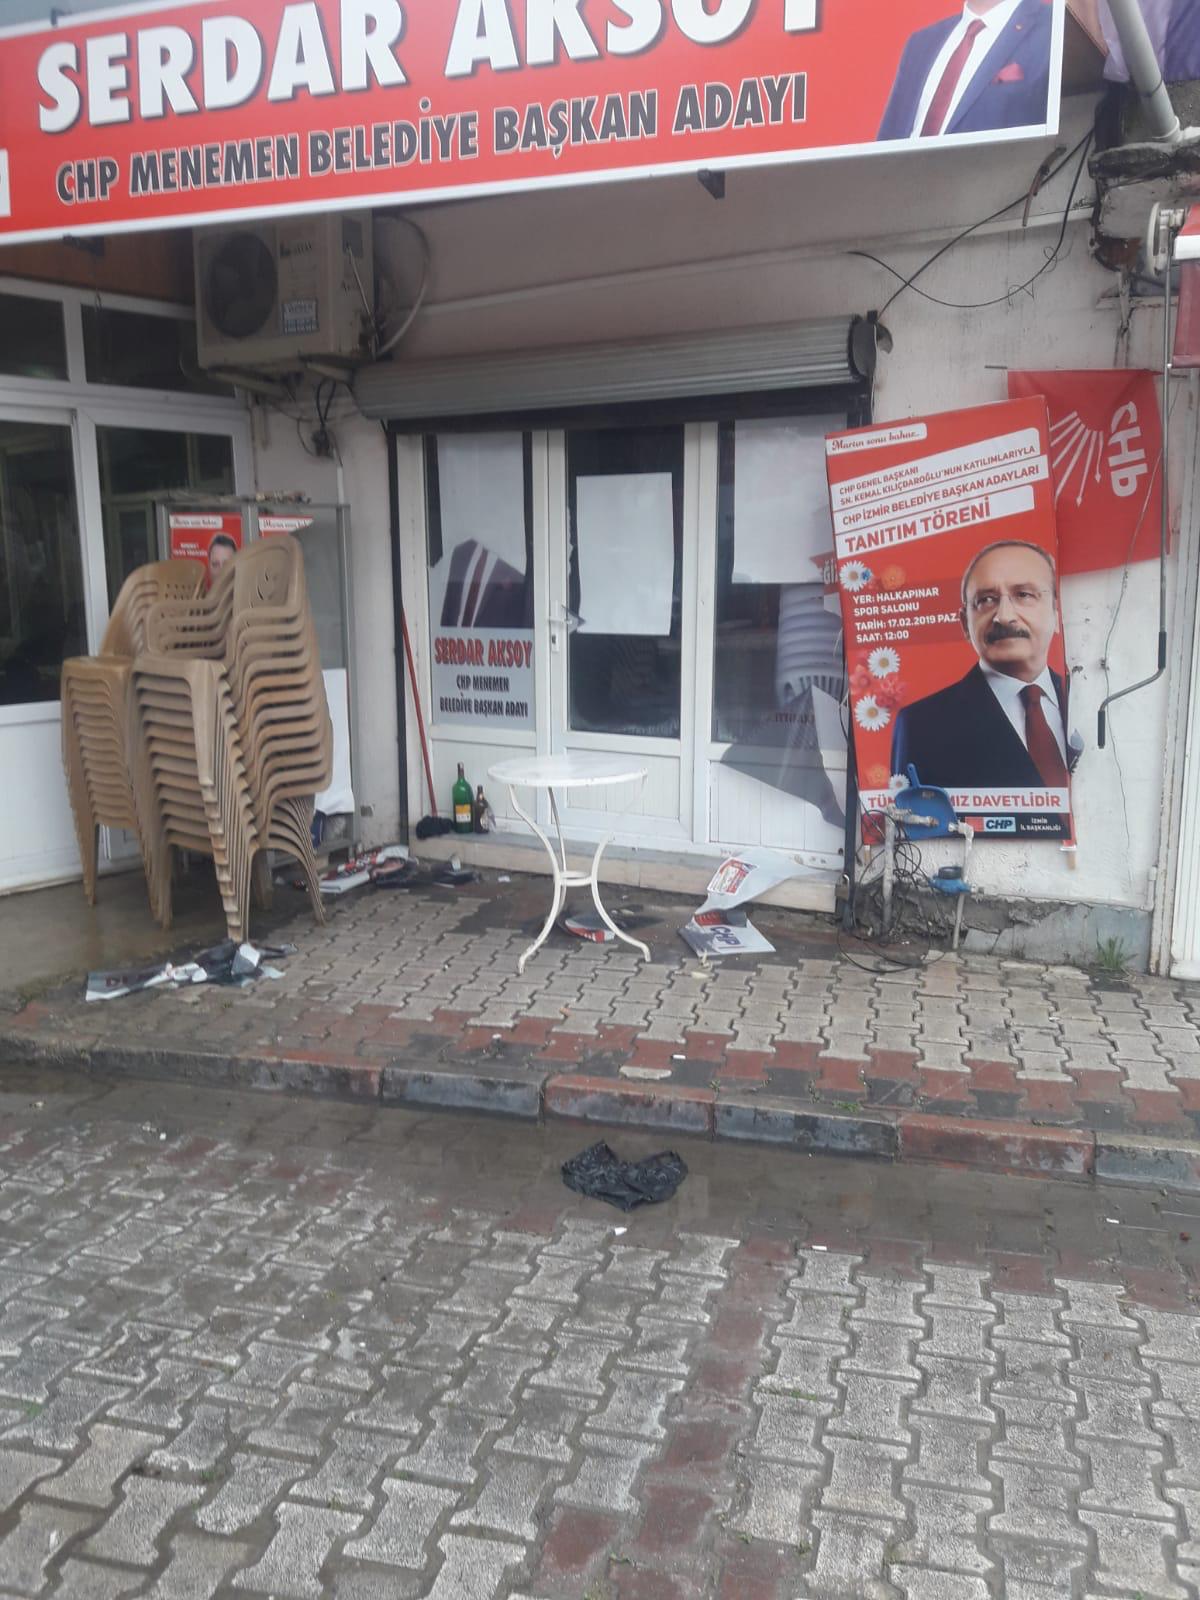 İzmir'de seçim bürosuna gerçekleştirilen saldırıdan kareler 3